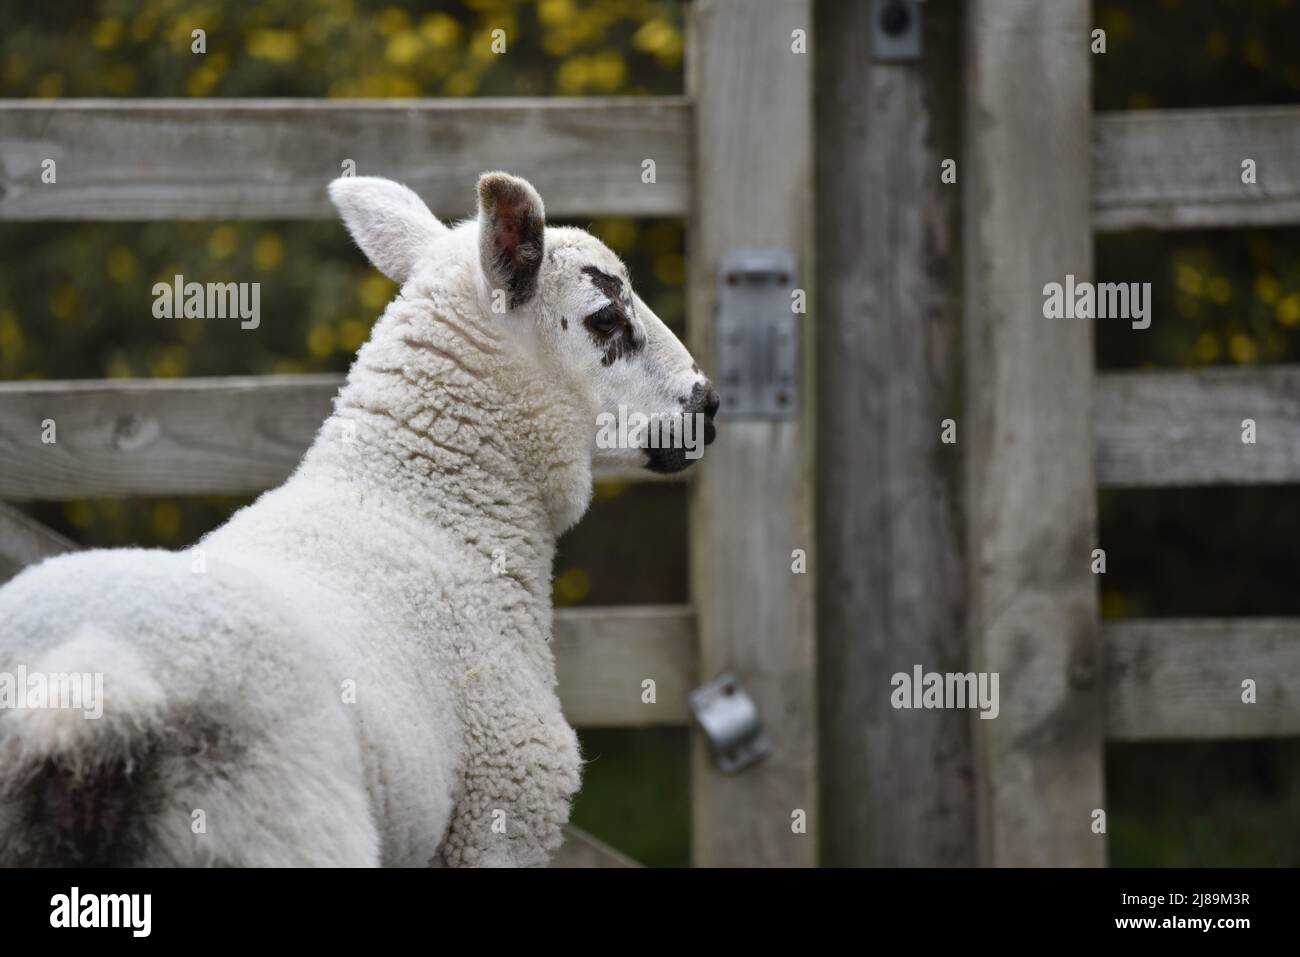 Primo piano di un agnello Profilo posteriore e destro a sinistra dell'immagine guardando verso Farm Gate a destra dell'immagine, nel Galles centrale a maggio Foto Stock